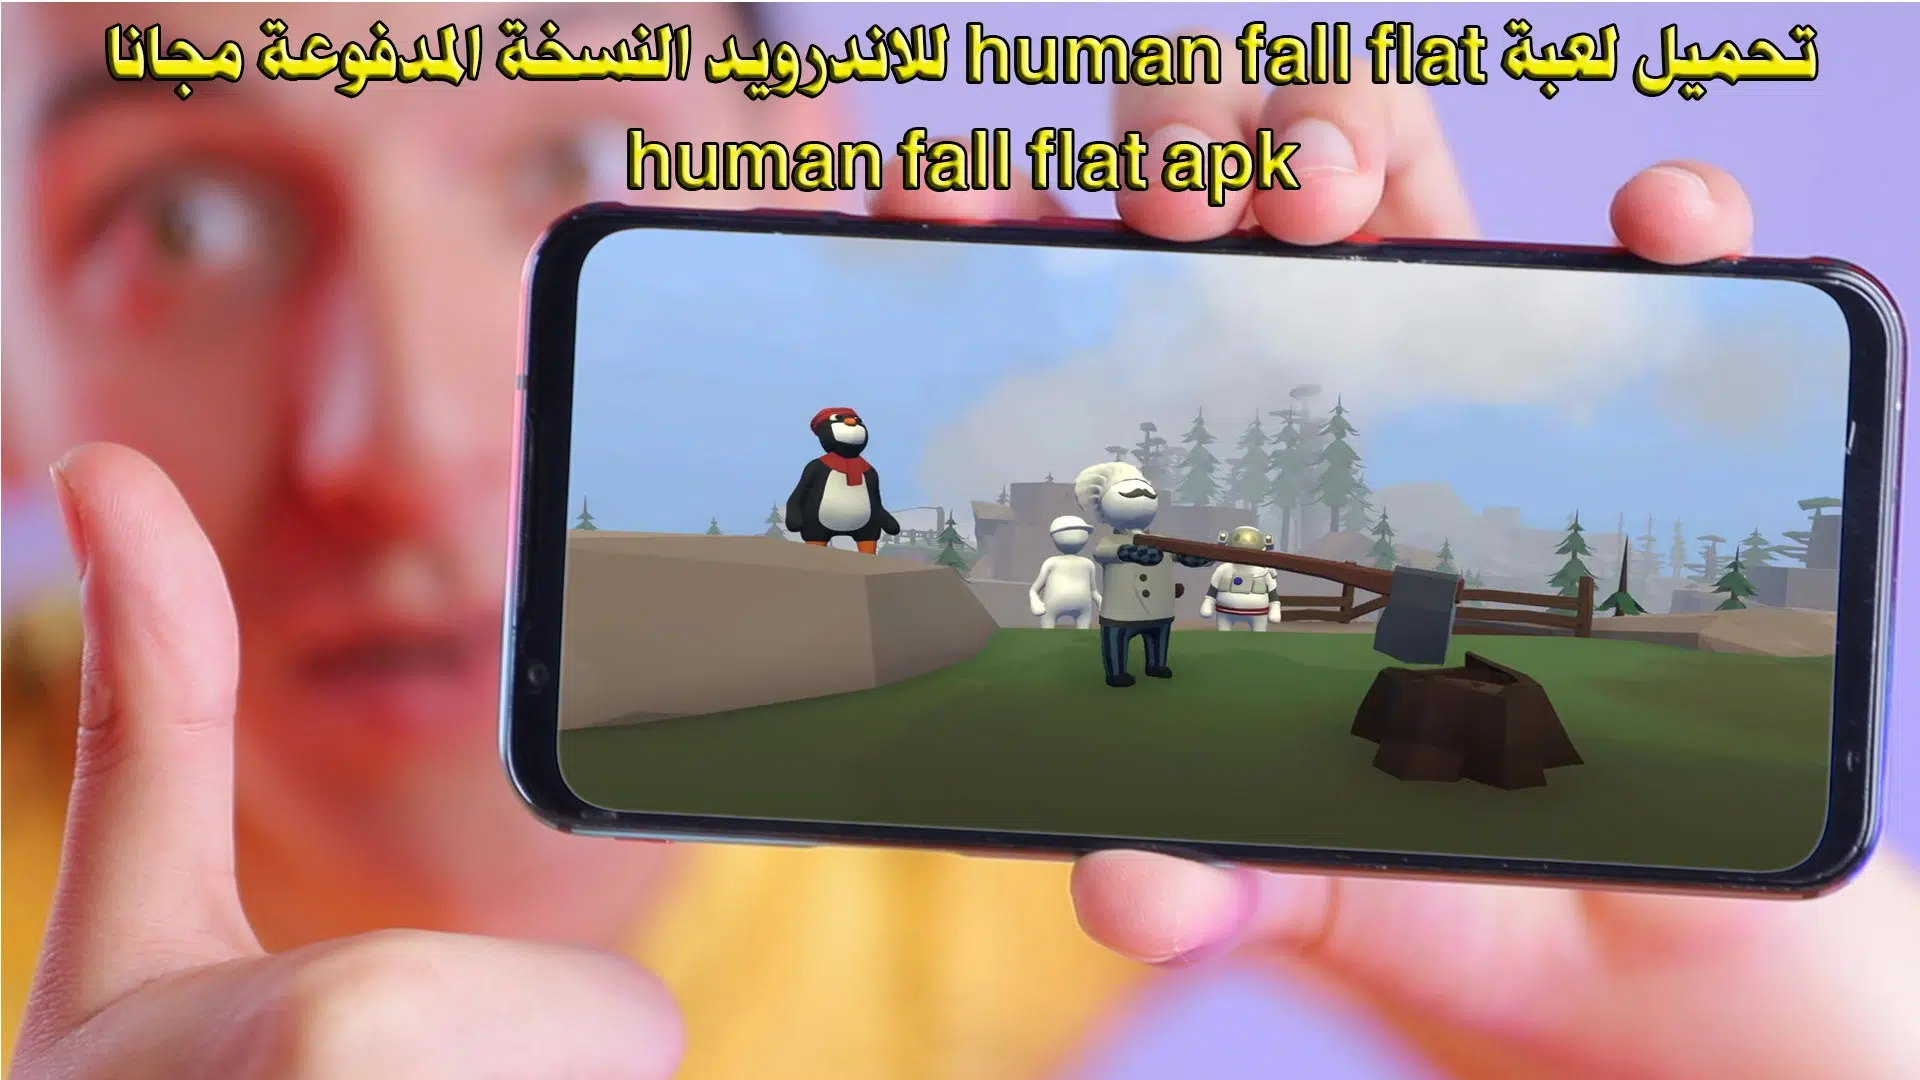 تحميل لعبة human fall flat للاندرويد النسخة المدفوعة مجانا - human fall flat apk